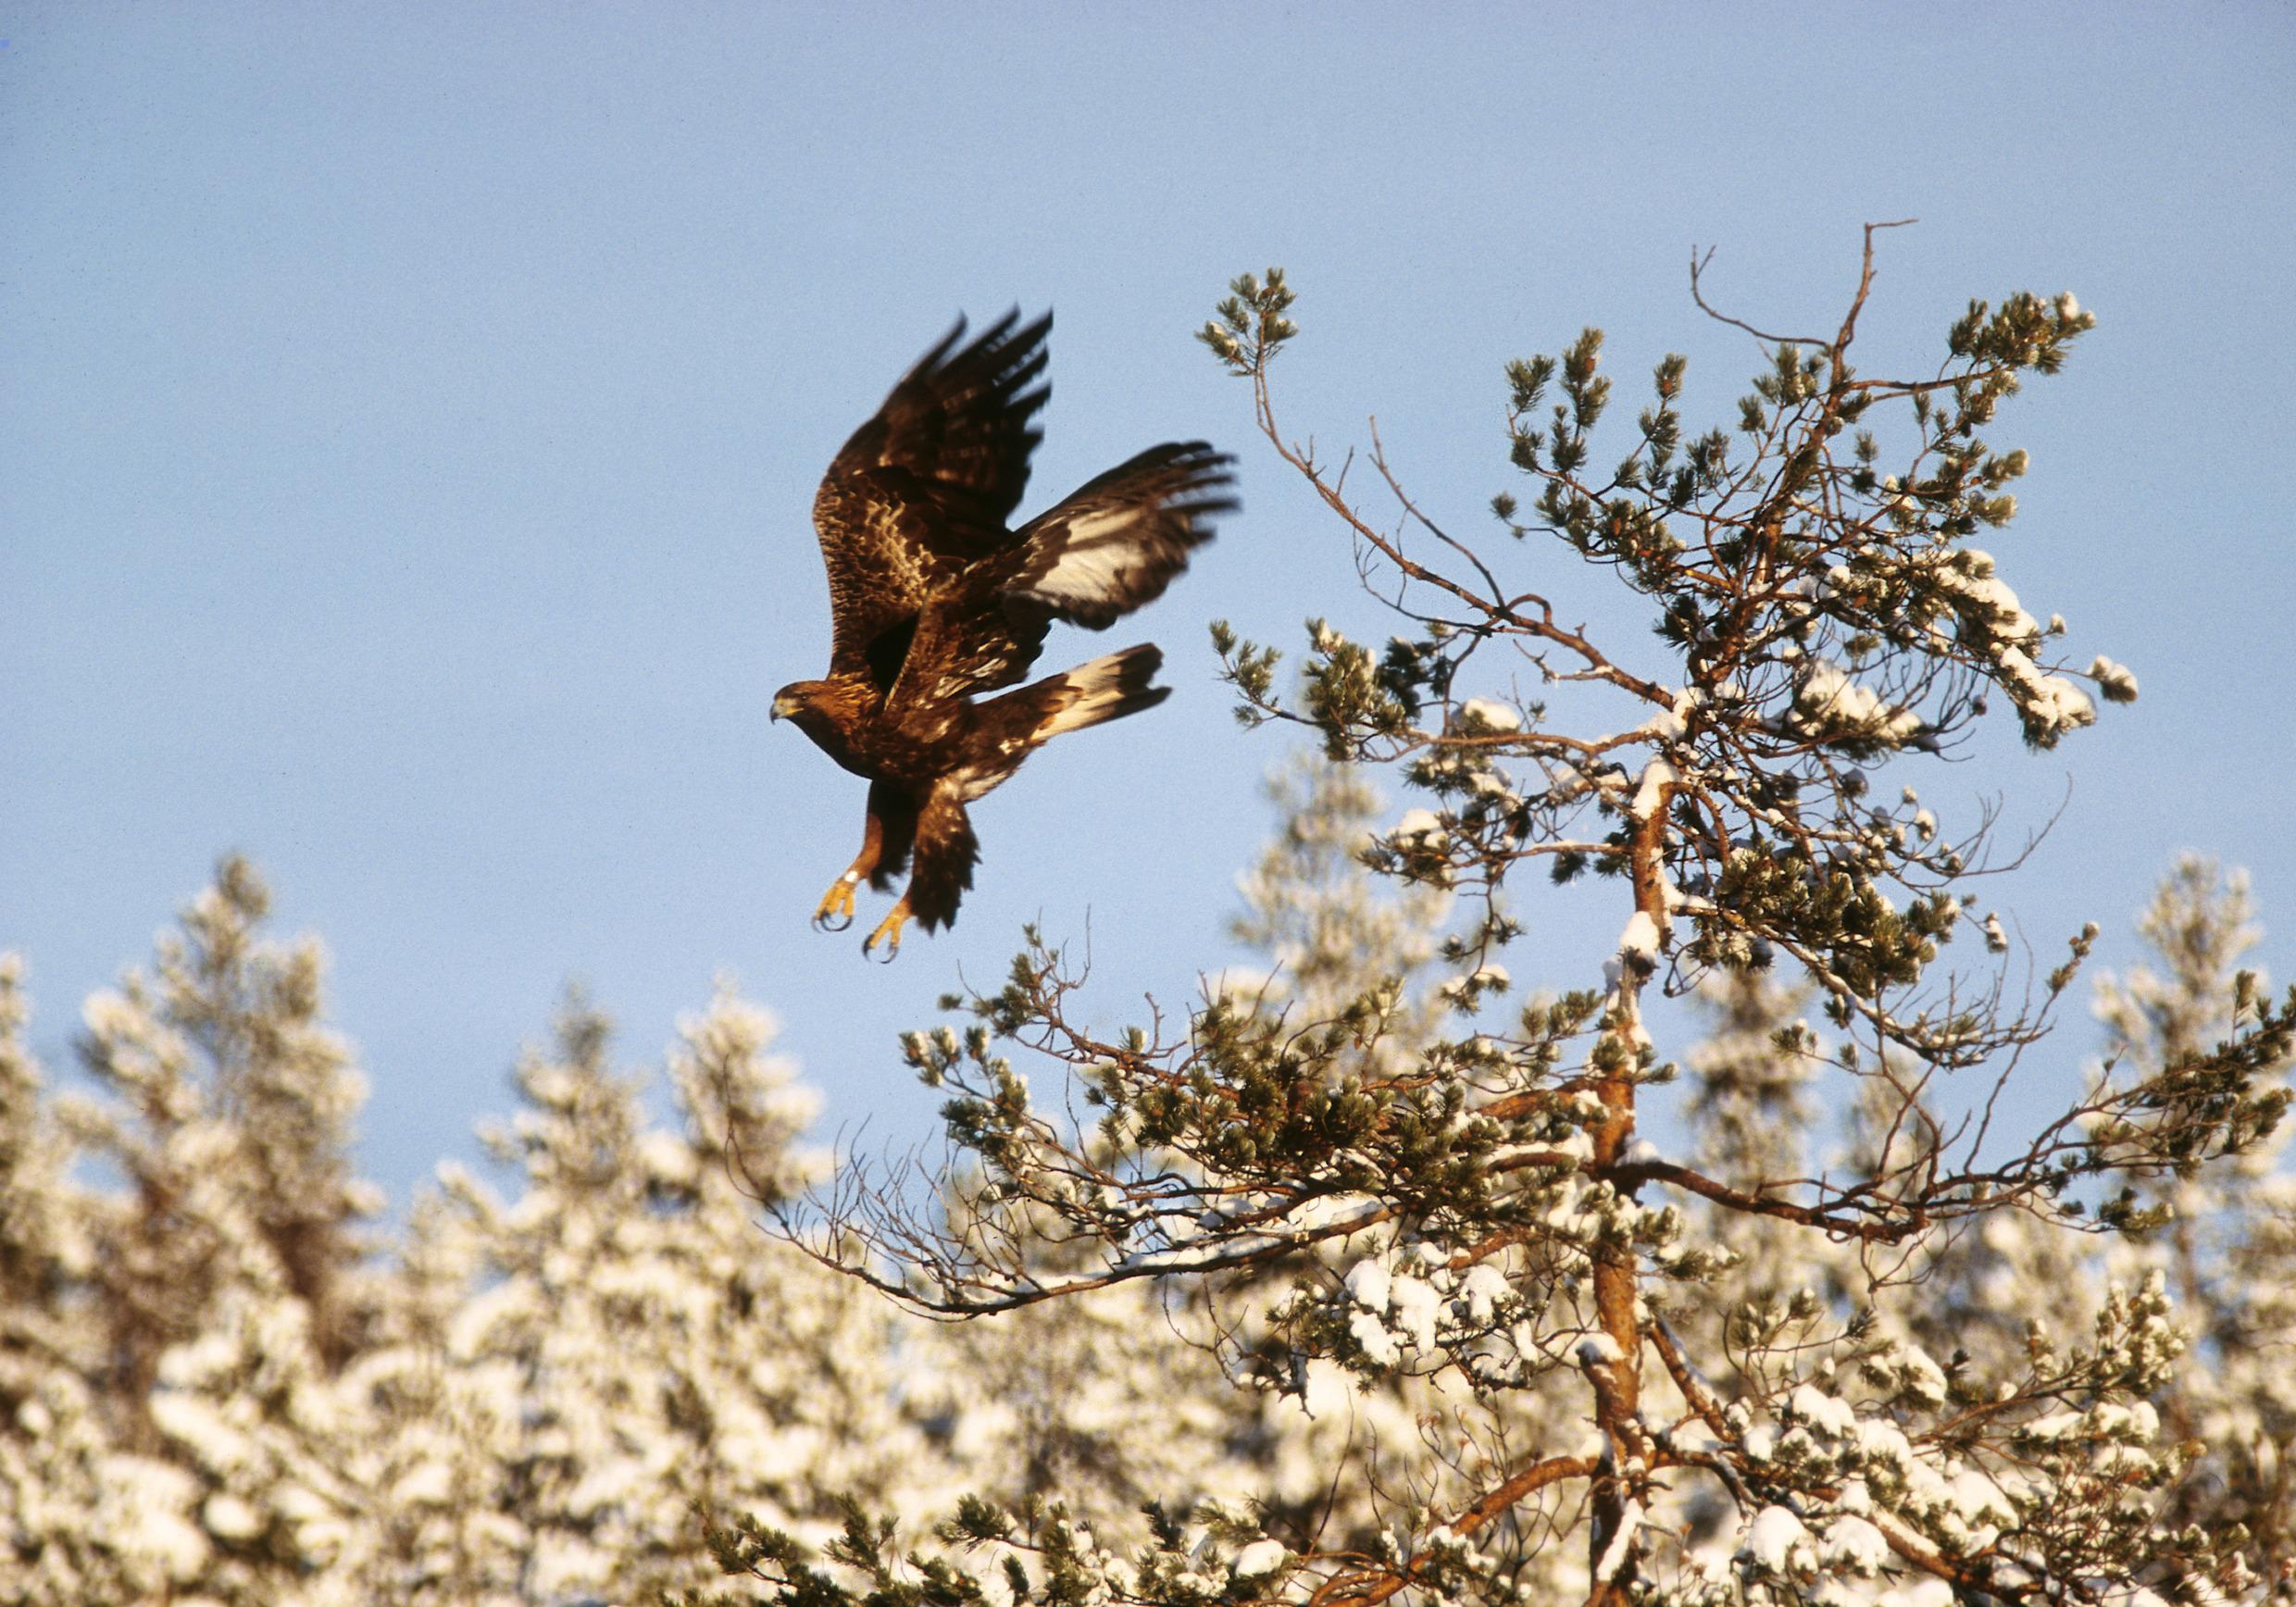 A golden eagle in full flight.